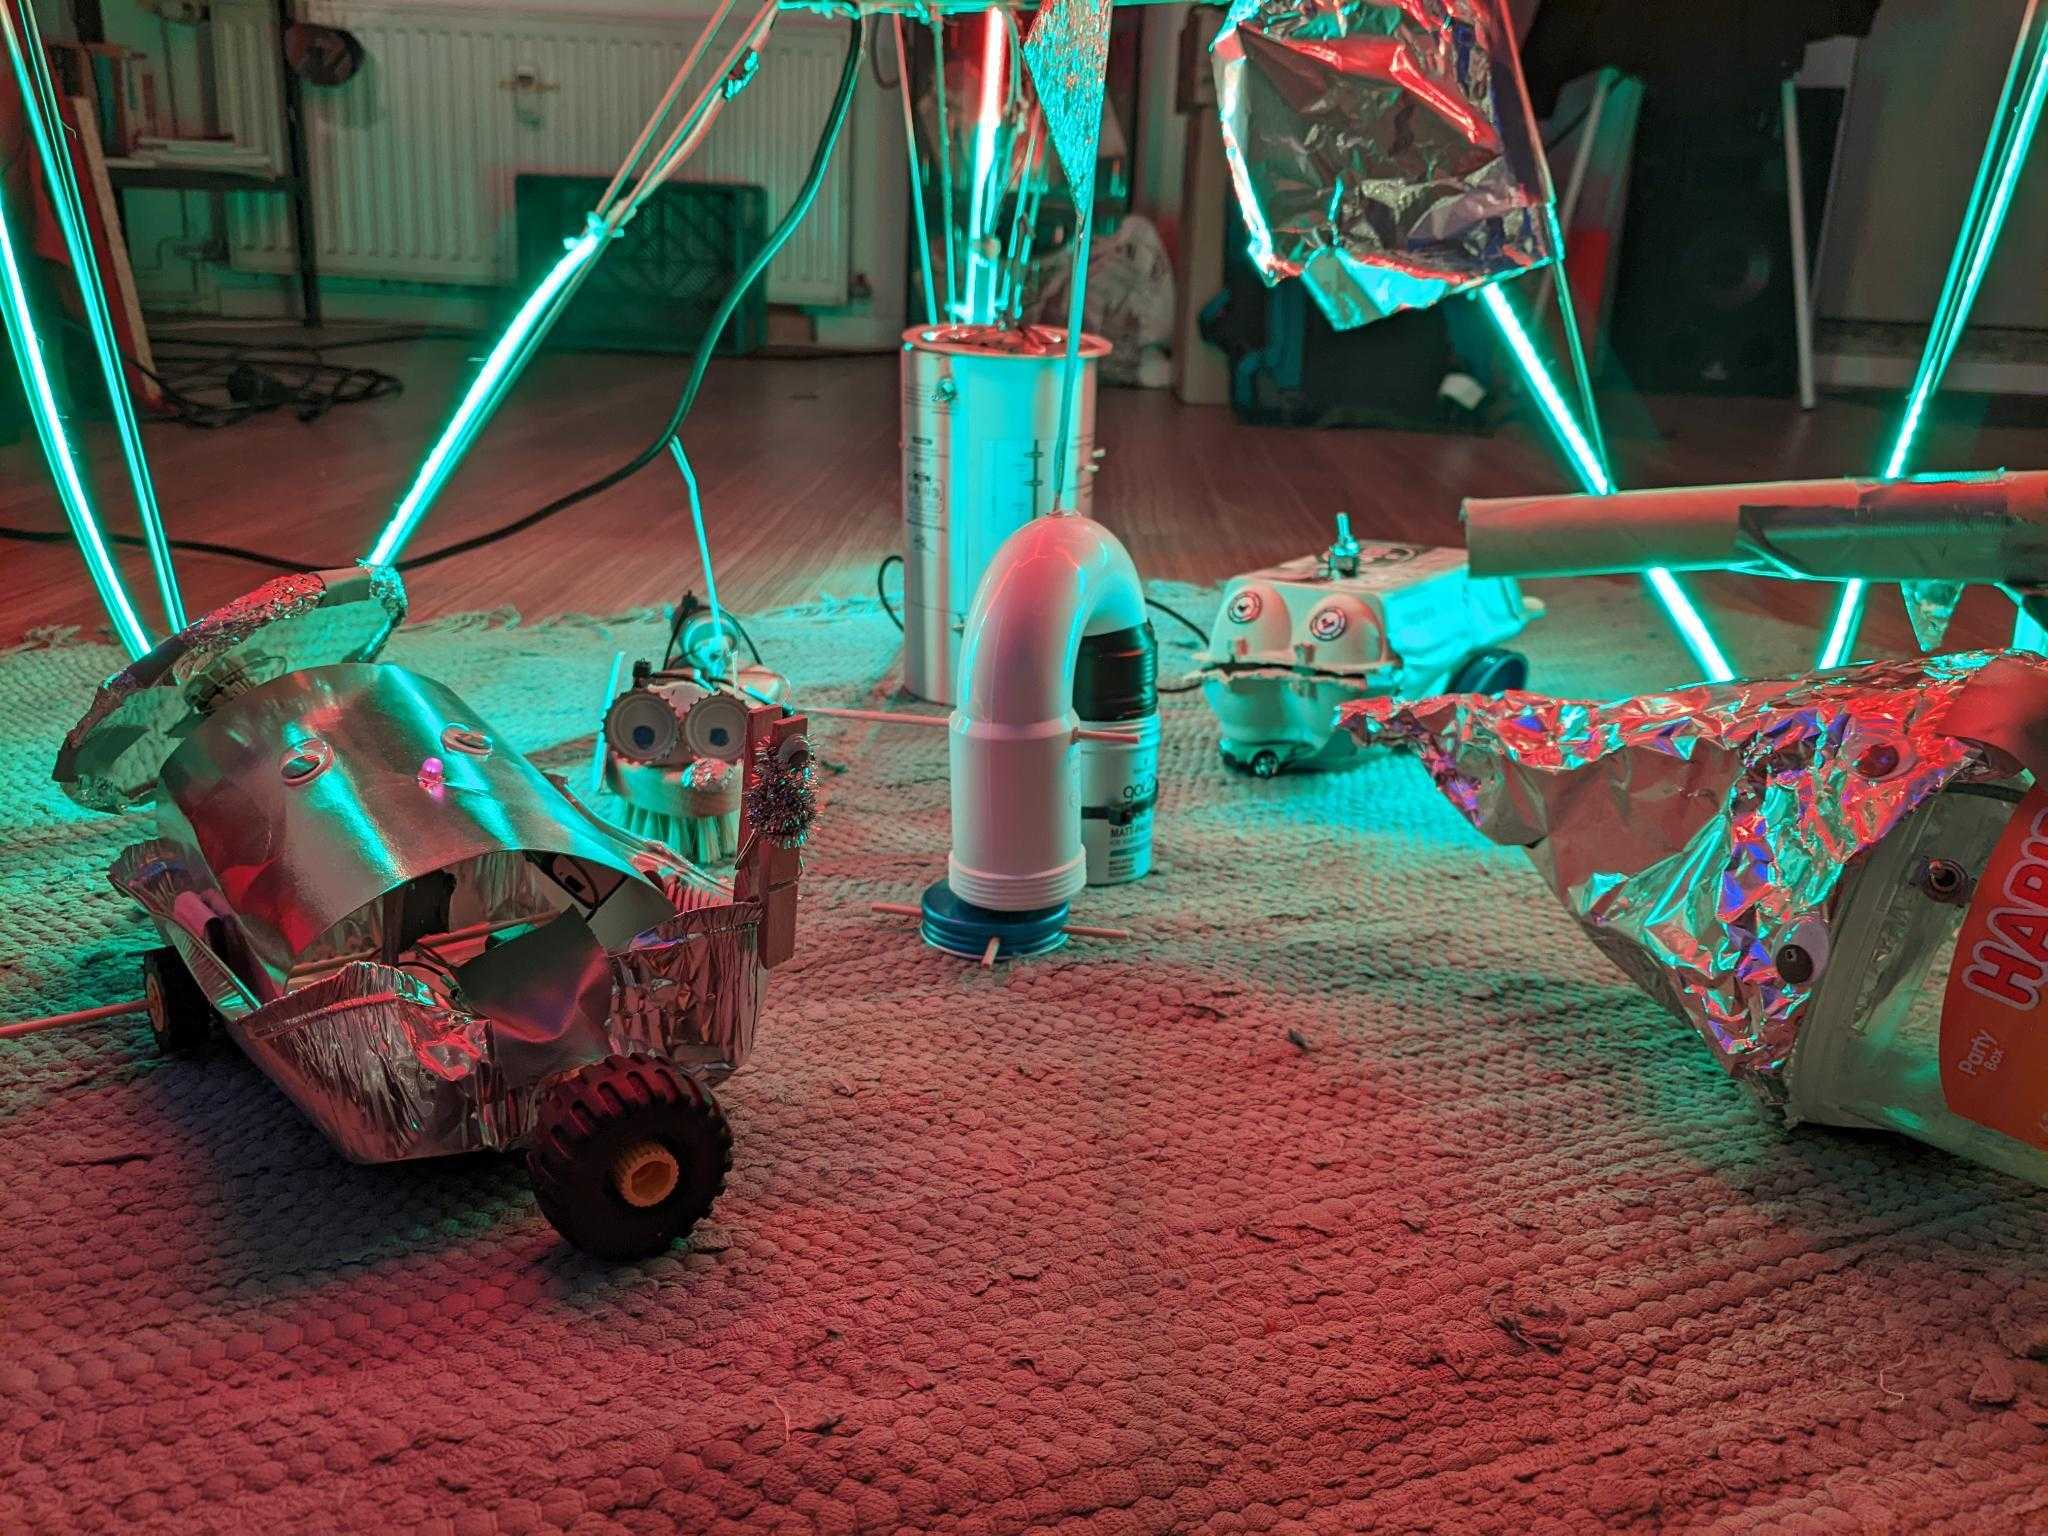 Selbstgebastelte Roboter auf einem Teppich in neonfarbener Beleuchtung